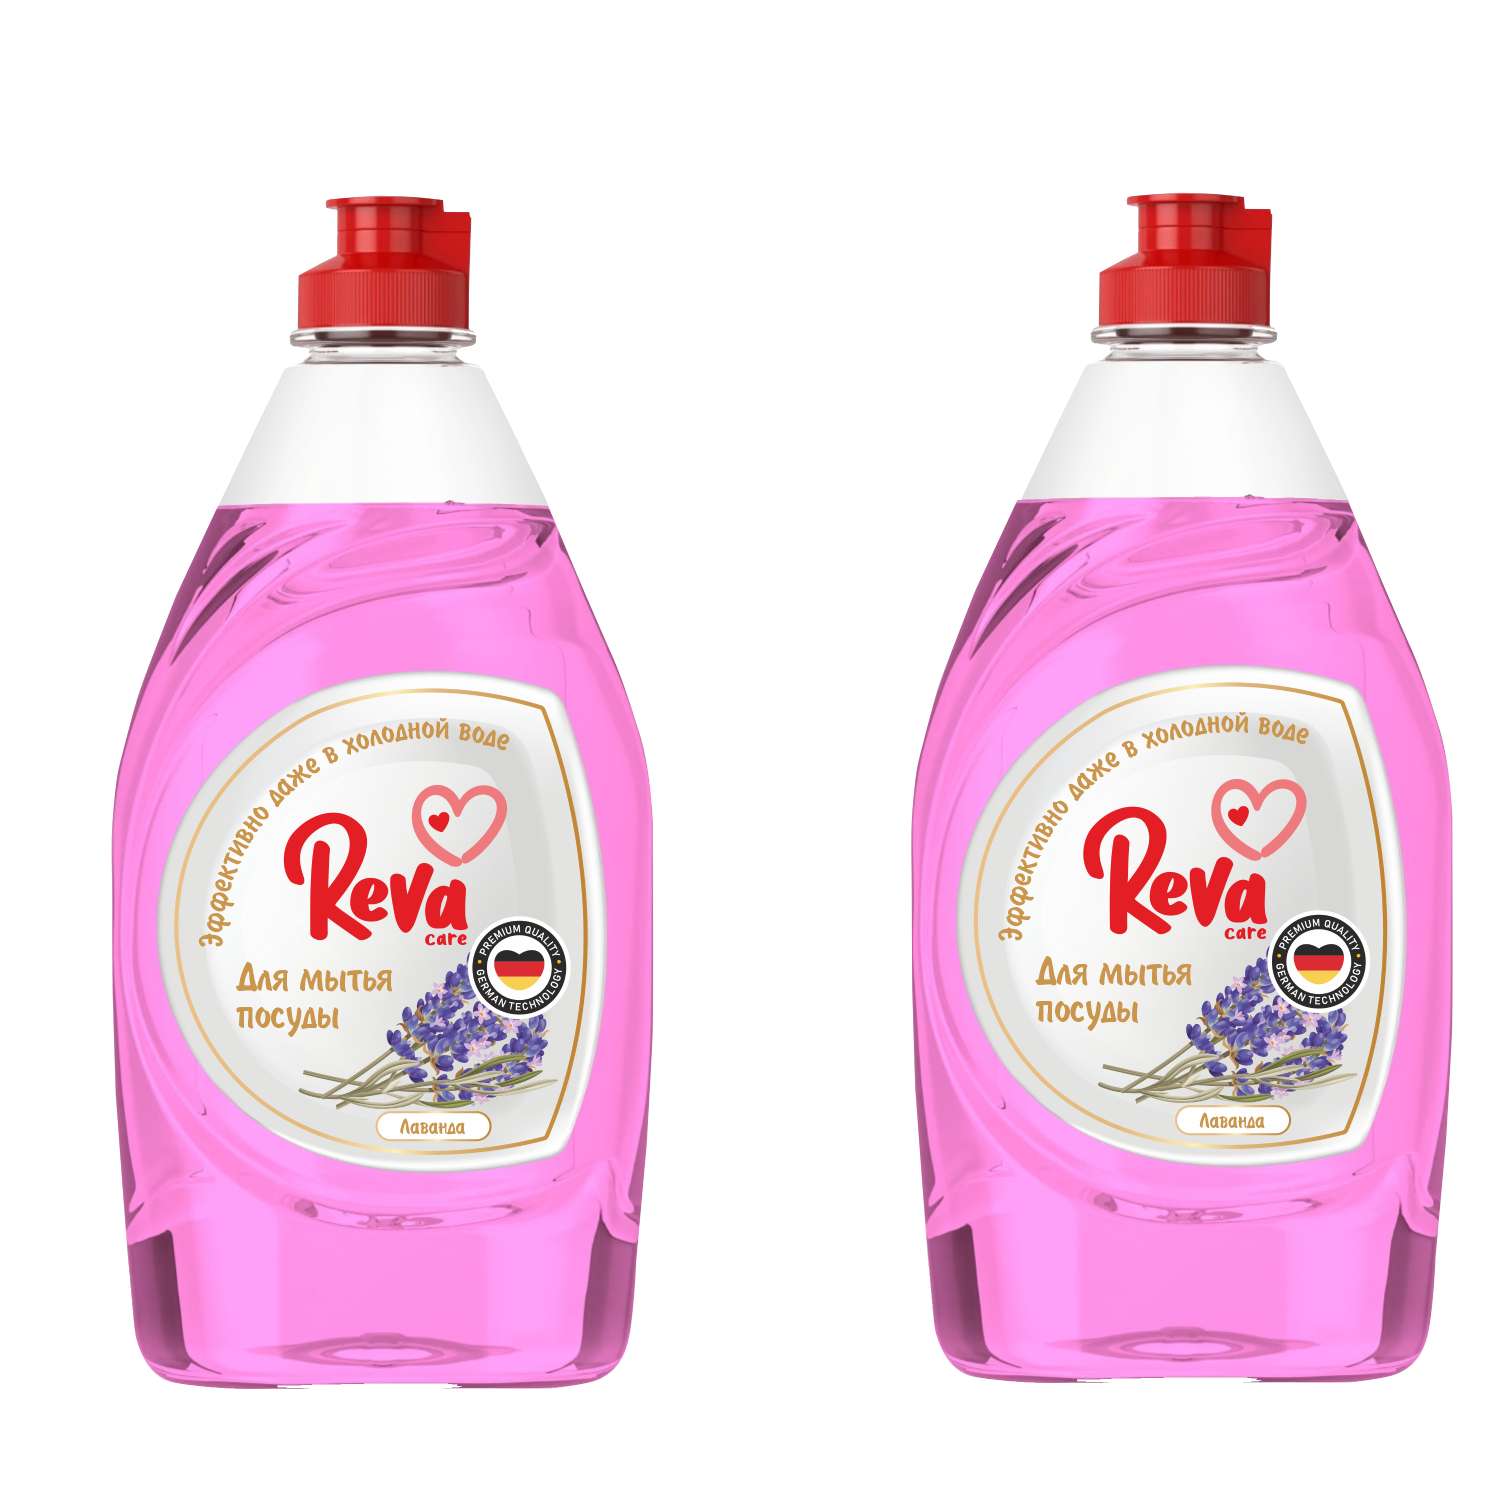 Средство для мытья посуды Reva Care эко гель 5 л с ароматом Лаванды 2 упаковки по 450 мл - фото 1